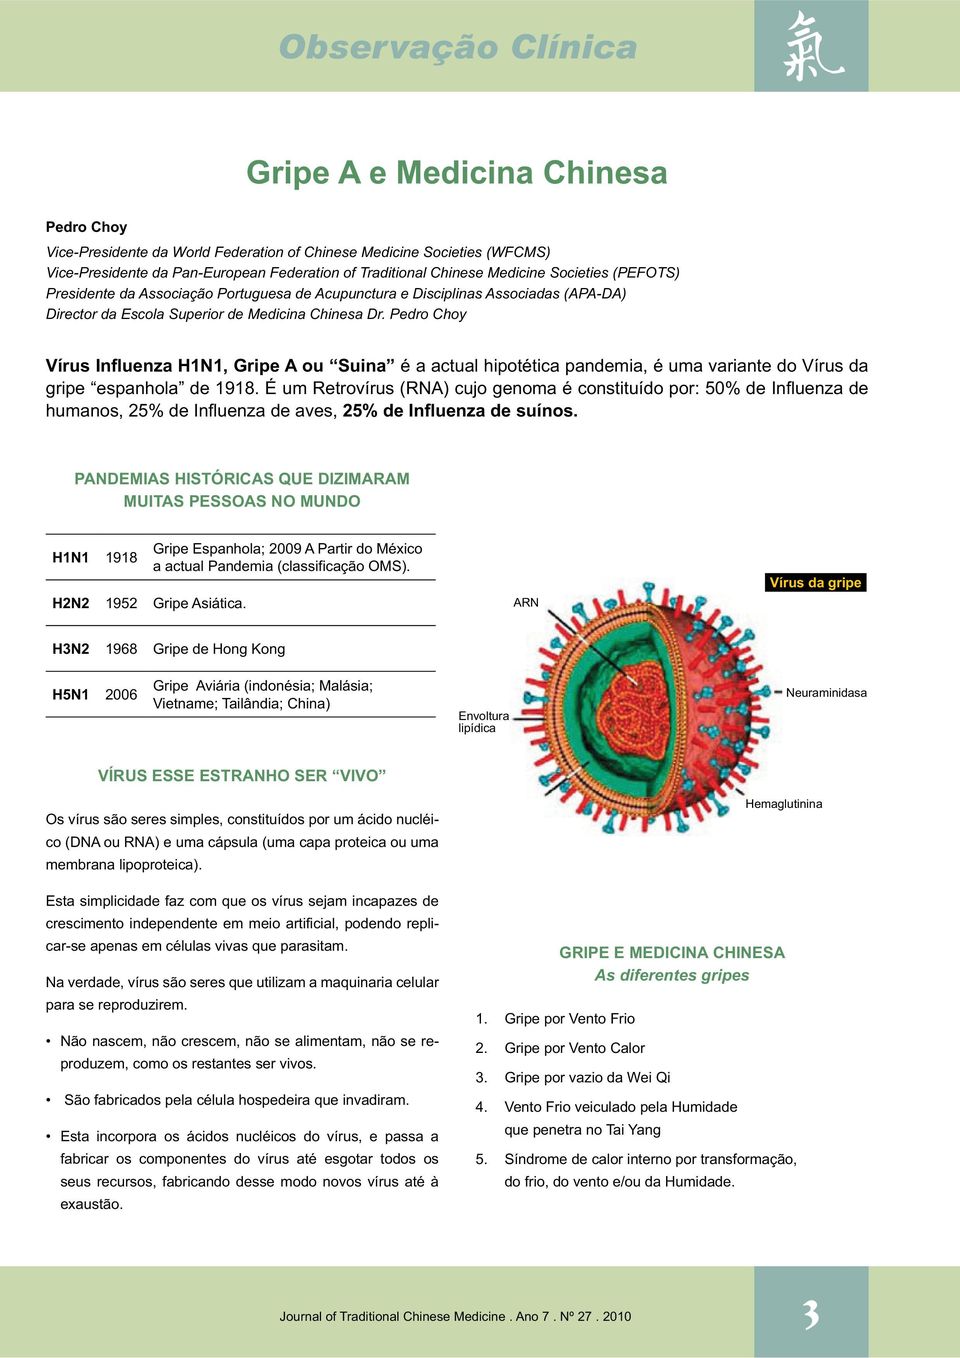 Pedro Choy Vírus Influenza H1N1, Gripe A ou Suina é a actual hipotética pandemia, é uma variante do Vírus da gripe espanhola de 1918.